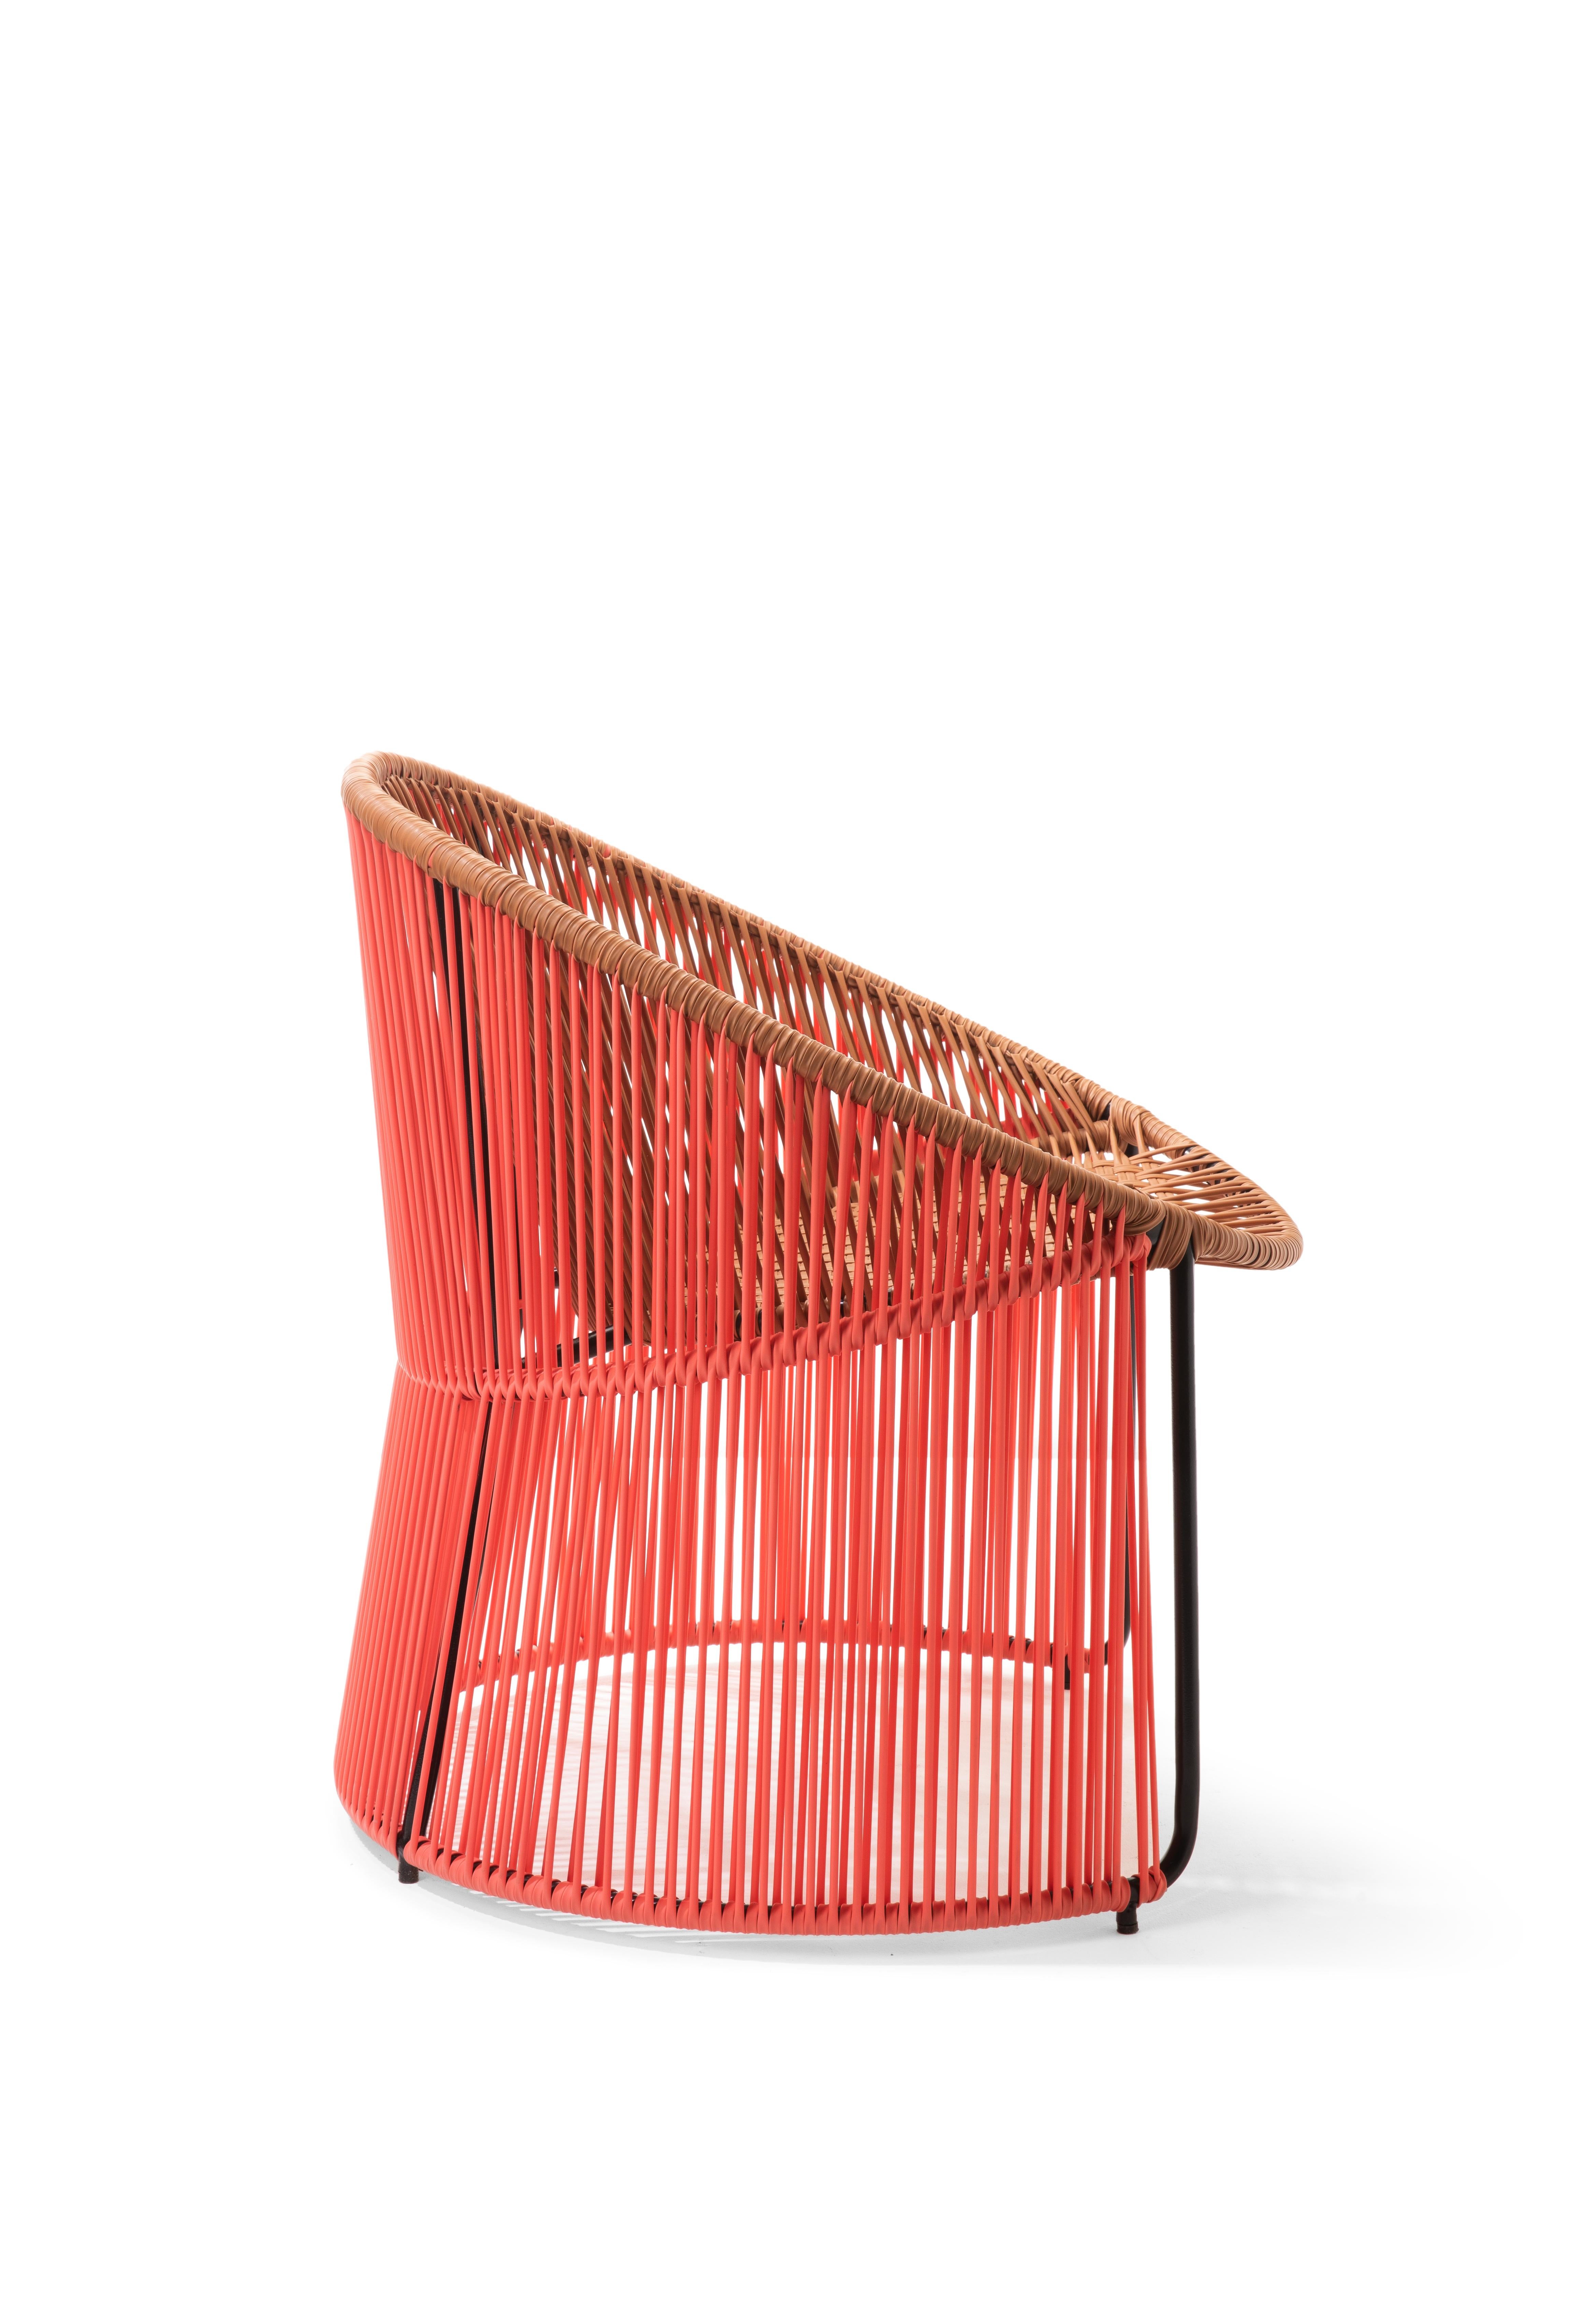 German Set of 4 Coral Cartagenas Lounge Chair by Sebastian Herkner For Sale